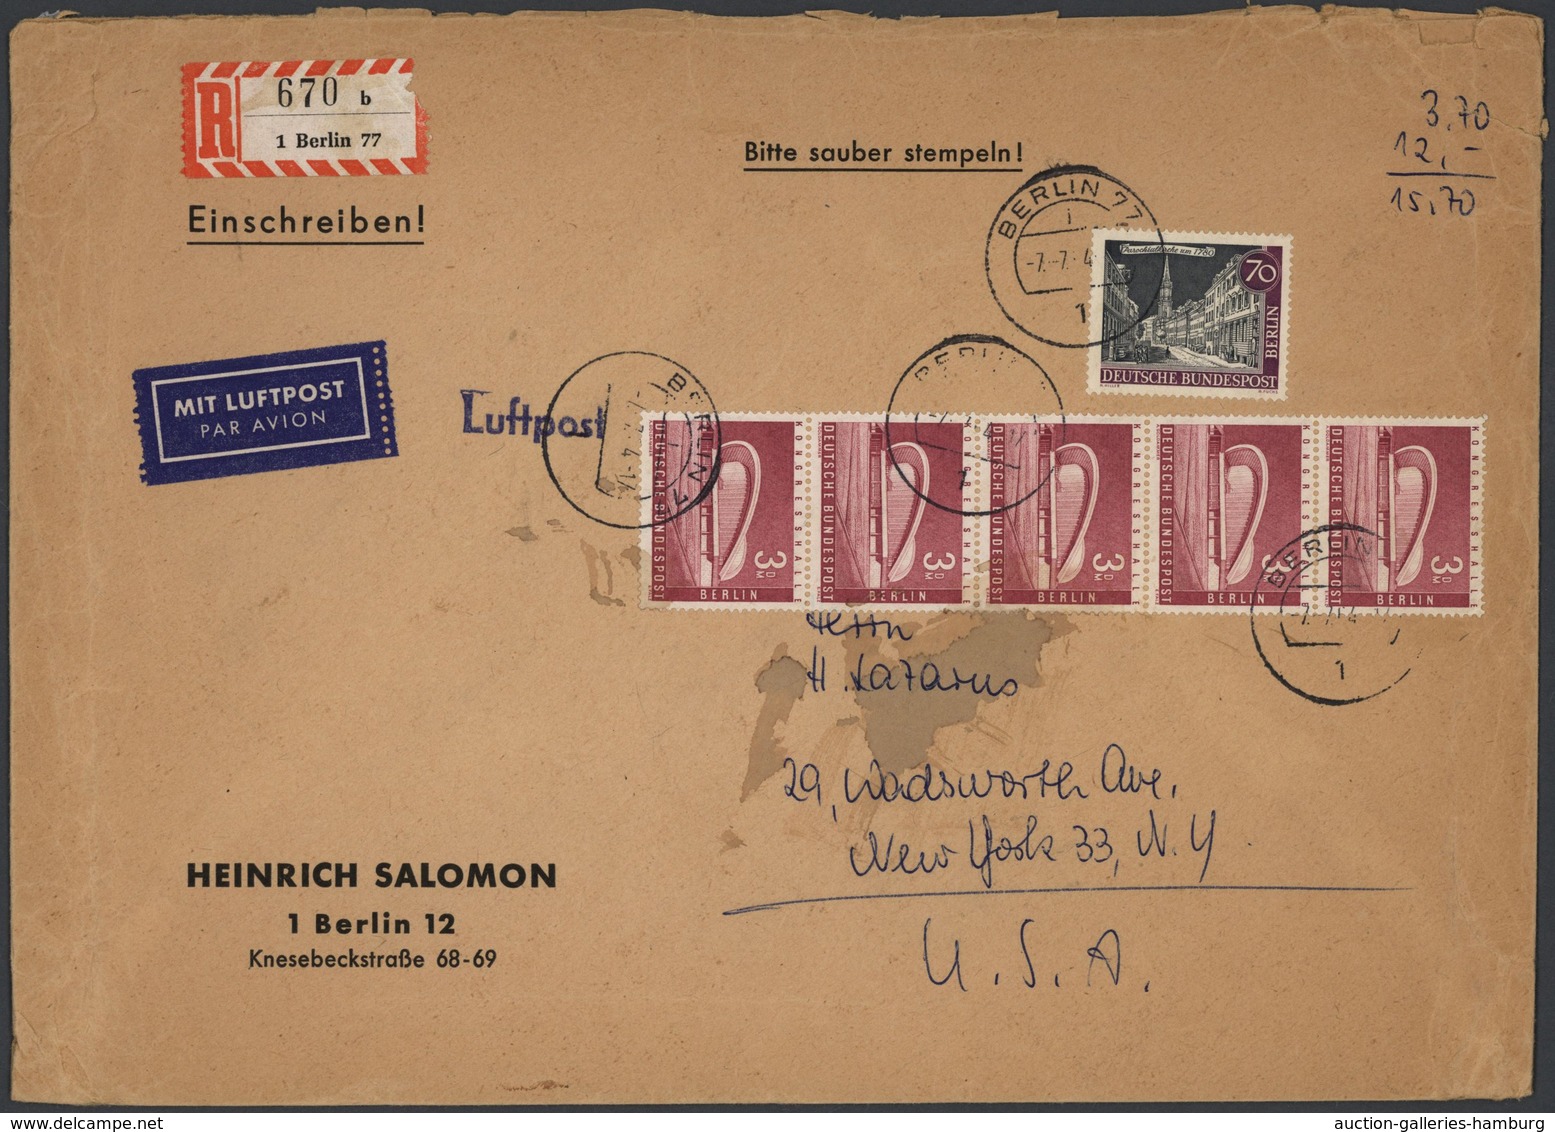 Berlin: 1977: Umschlag Firma Salomon Format Ca. 24,7 X 17,8 Cm Als Auslandsbrief Mit Einschreiben Un - Covers & Documents